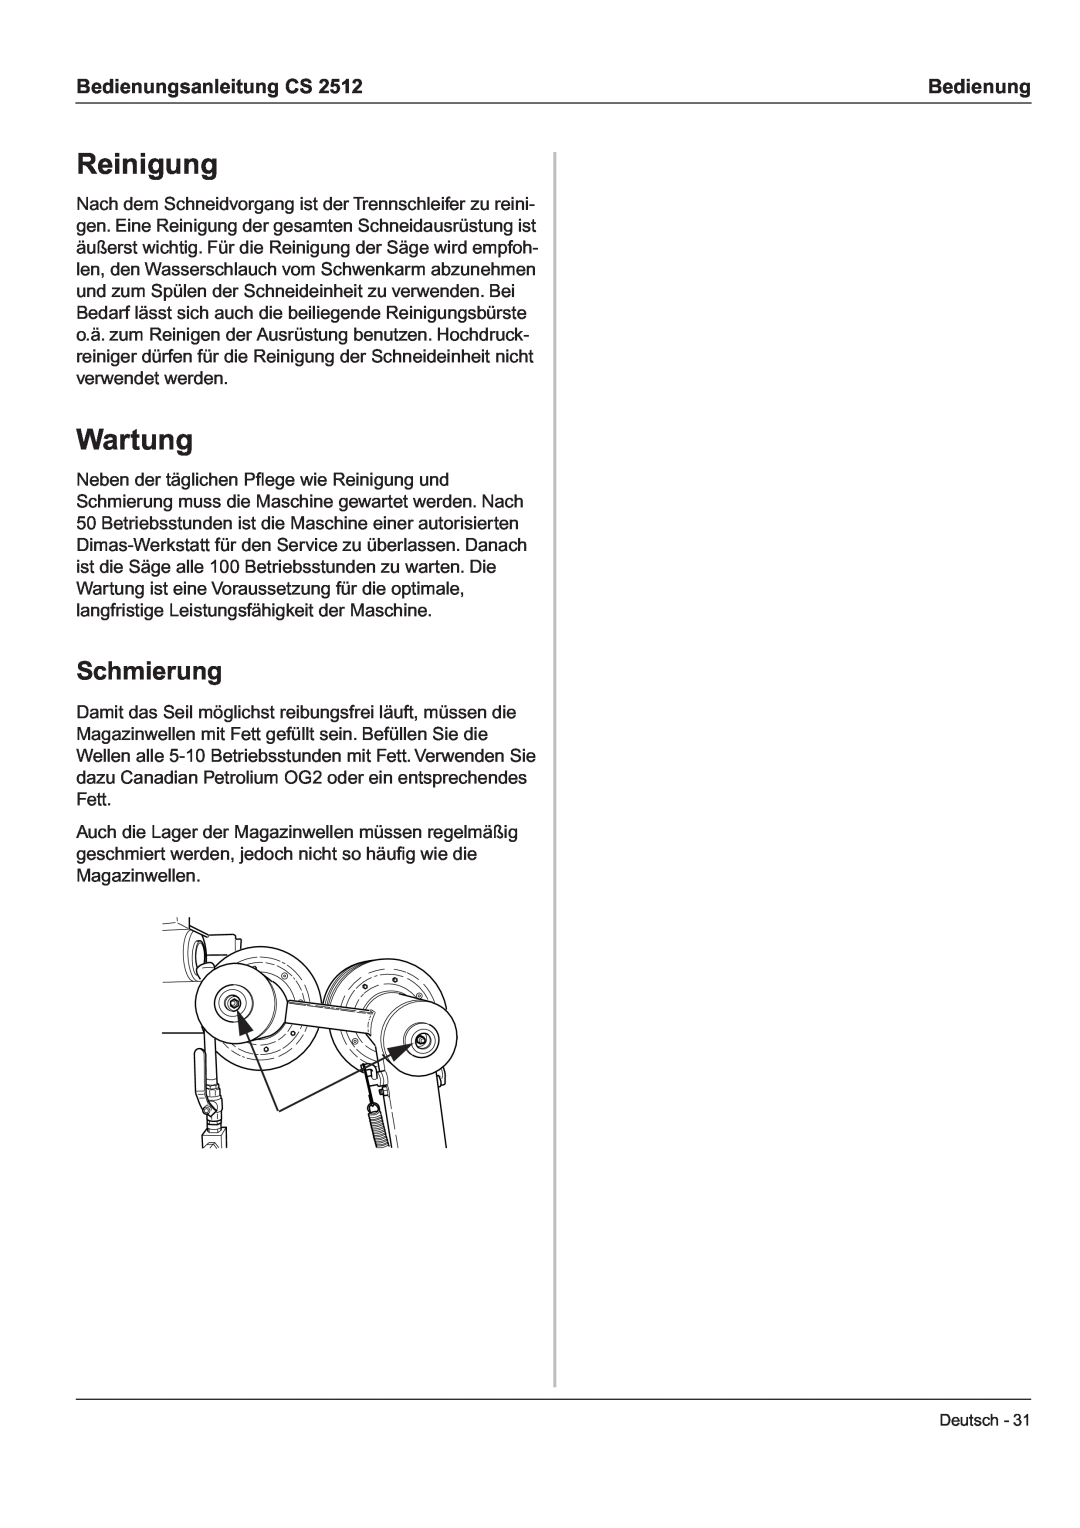 Husqvarna CS 2512 manual Reinigung, Wartung, Schmierung, Bedienungsanleitung CS 